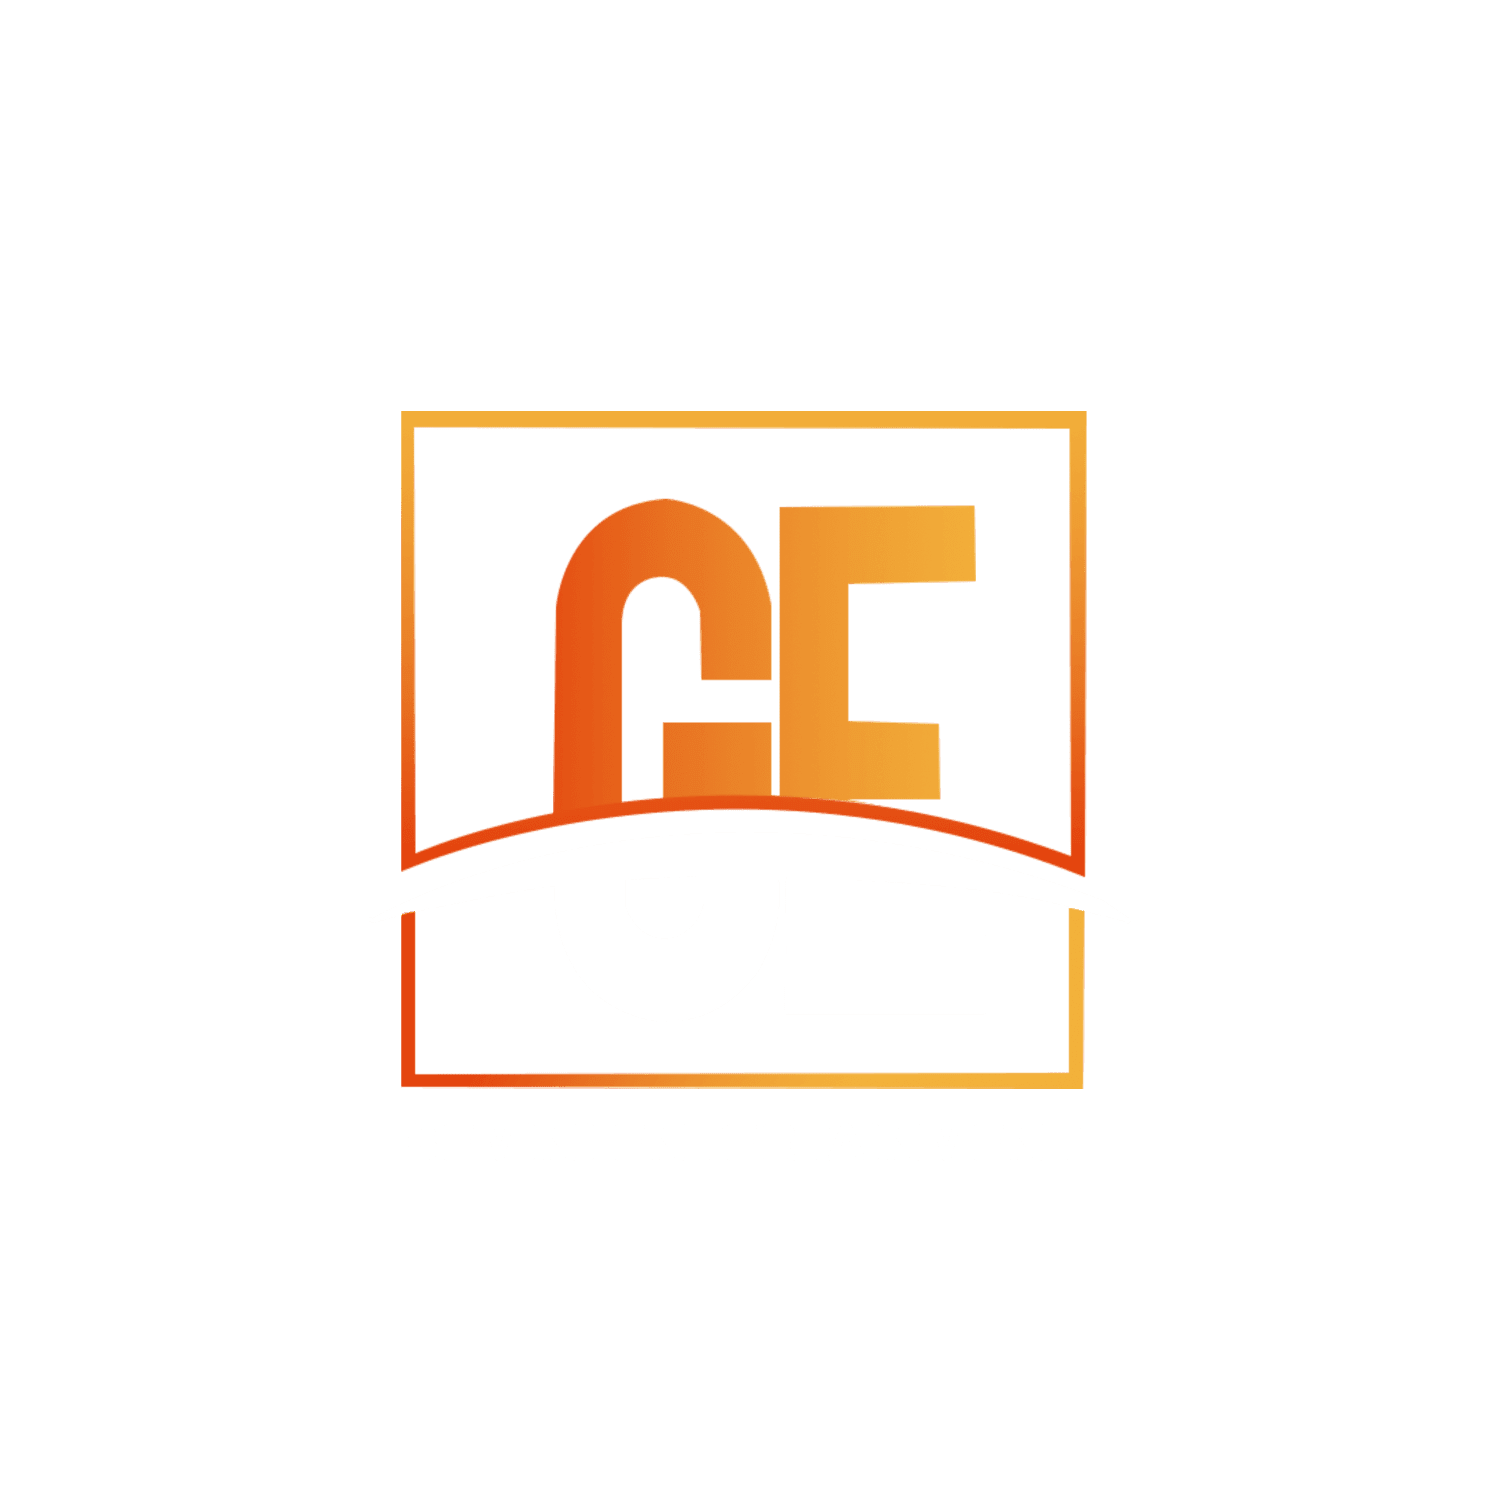 Gemini Entertainment